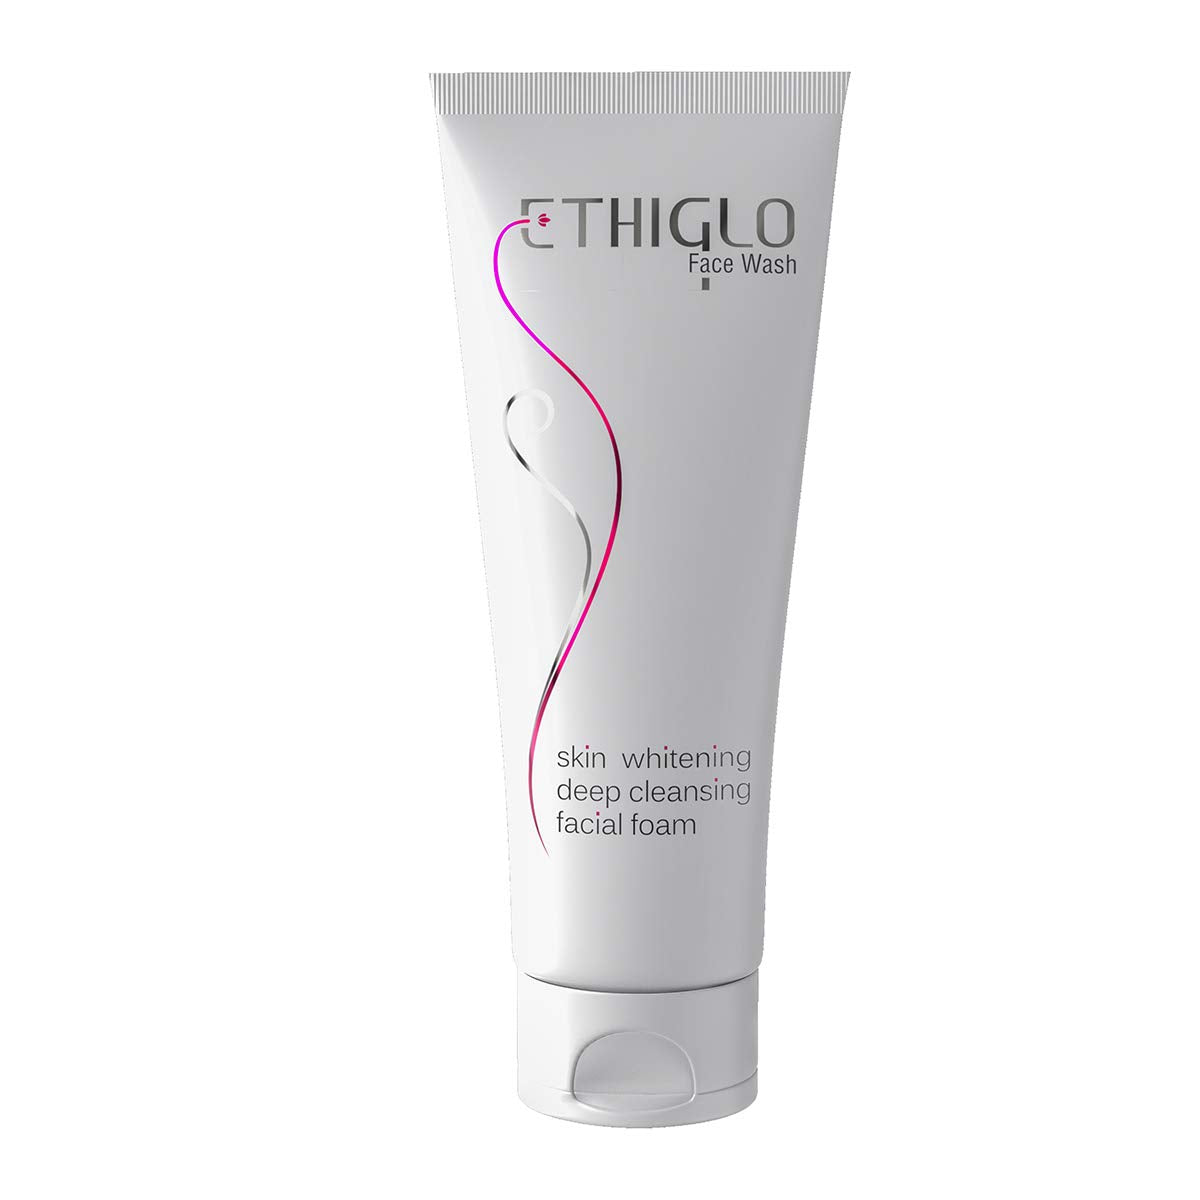 Ethiglo Skin Whitening Face Wash - 70gm